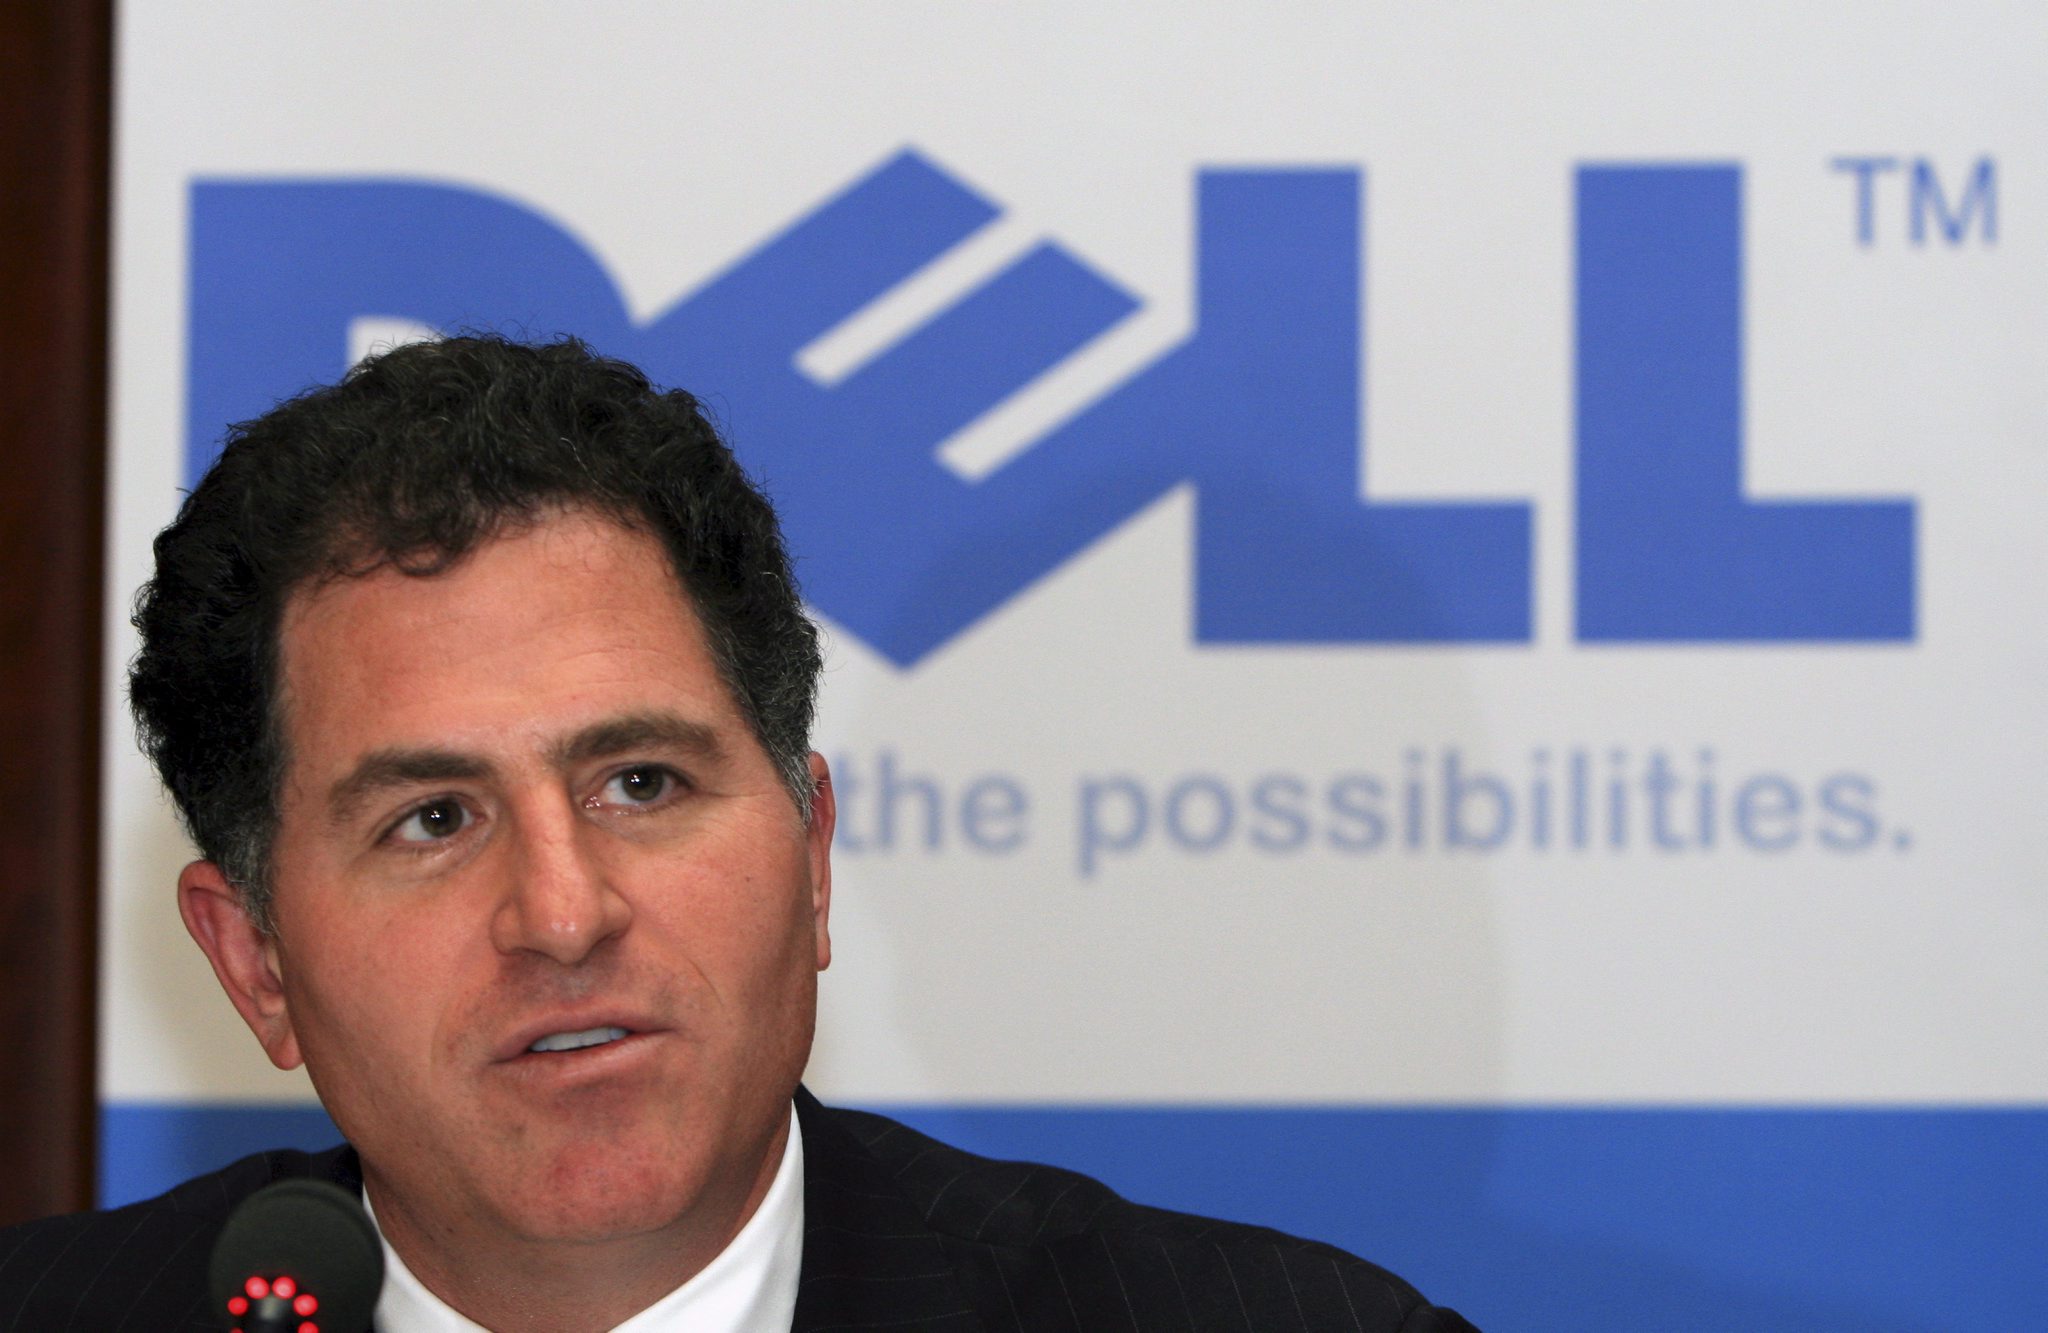 Aandeelhouders van Dell hebben donderdag ingestemd met de overname van het bedrijf door oprichter en topman Michael Dell. Die wil het computerbedrijf samen met investeringsmaatschappij Silver Lake voor circa 25 miljard dollar (bijna 19 miljard euro) van de beurs halen. Dell en Silver Lake waren maandenlang verwikkeld in een verhitte strijd met grootaandeelhouder en miljardair Carl Icahn. Die vond dat het bedrijf met het bod werd ondergewaardeerd en kwam met een eigen voorstel om Dell beursgenoteerd te houden. Icahn gaf zijn strijd eerder deze week op. Bestuursvoorzitter Michael Dell, die het bedrijf als student in 1984 oprichtte, wil Dell zonder druk van aandeelhouders hervormen zodat het de strijd aankan met producenten van smartphones en tablets. Goedkope modellen van Dell Dell groeide eind vorige eeuw hard door de sterke opkomst van de pc en de laptop. Daarbij wist het concurrenten achter zich te houden door goedkope modellen te bieden, die bij klanten thuis werden bezorgd. De afgelopen jaren gingen de verkopen echter achteruit, doordat consumenten steeds meer kiezen voor mobiele apparaten. Met het bedrag van 25 miljard dollar gaat het om de grootste uitkoop met geleend geld sinds hotelbedrijf Hilton door investeerder Blackstone in 2007 van de beurs werd gehaald. Uitgerekend donderdag werd bekendgemaakt dat Hilton later dit jaar 1,25 miljard dollar wil ophalen door gedeeltelijk terug te keren naar de beurs.